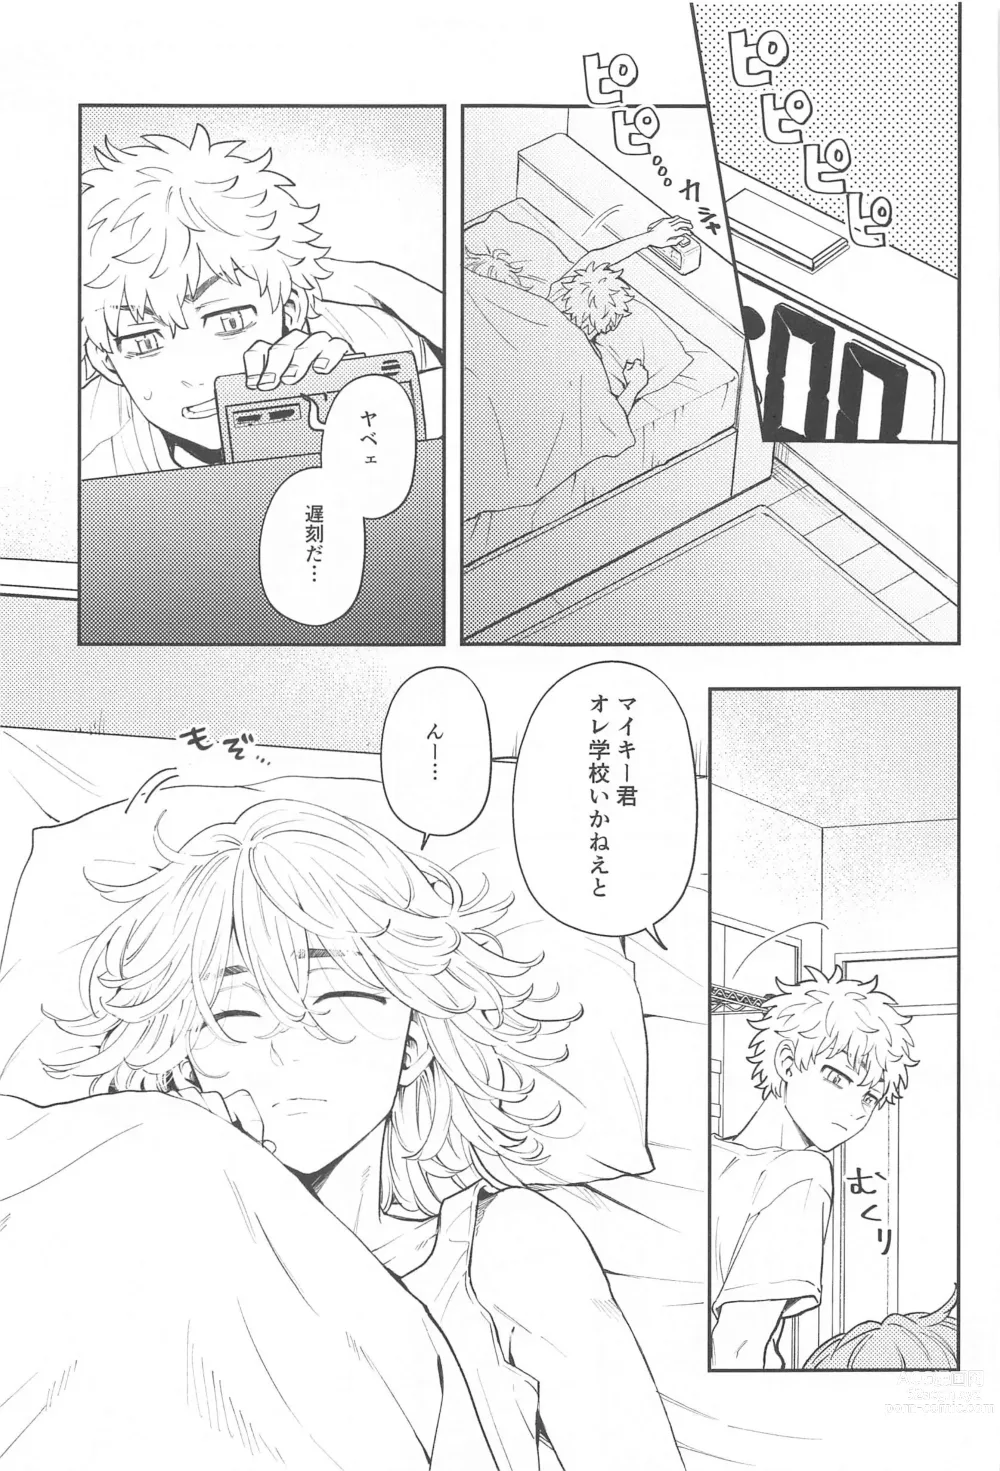 Page 2 of doujinshi Kyou wa Osoroi de!